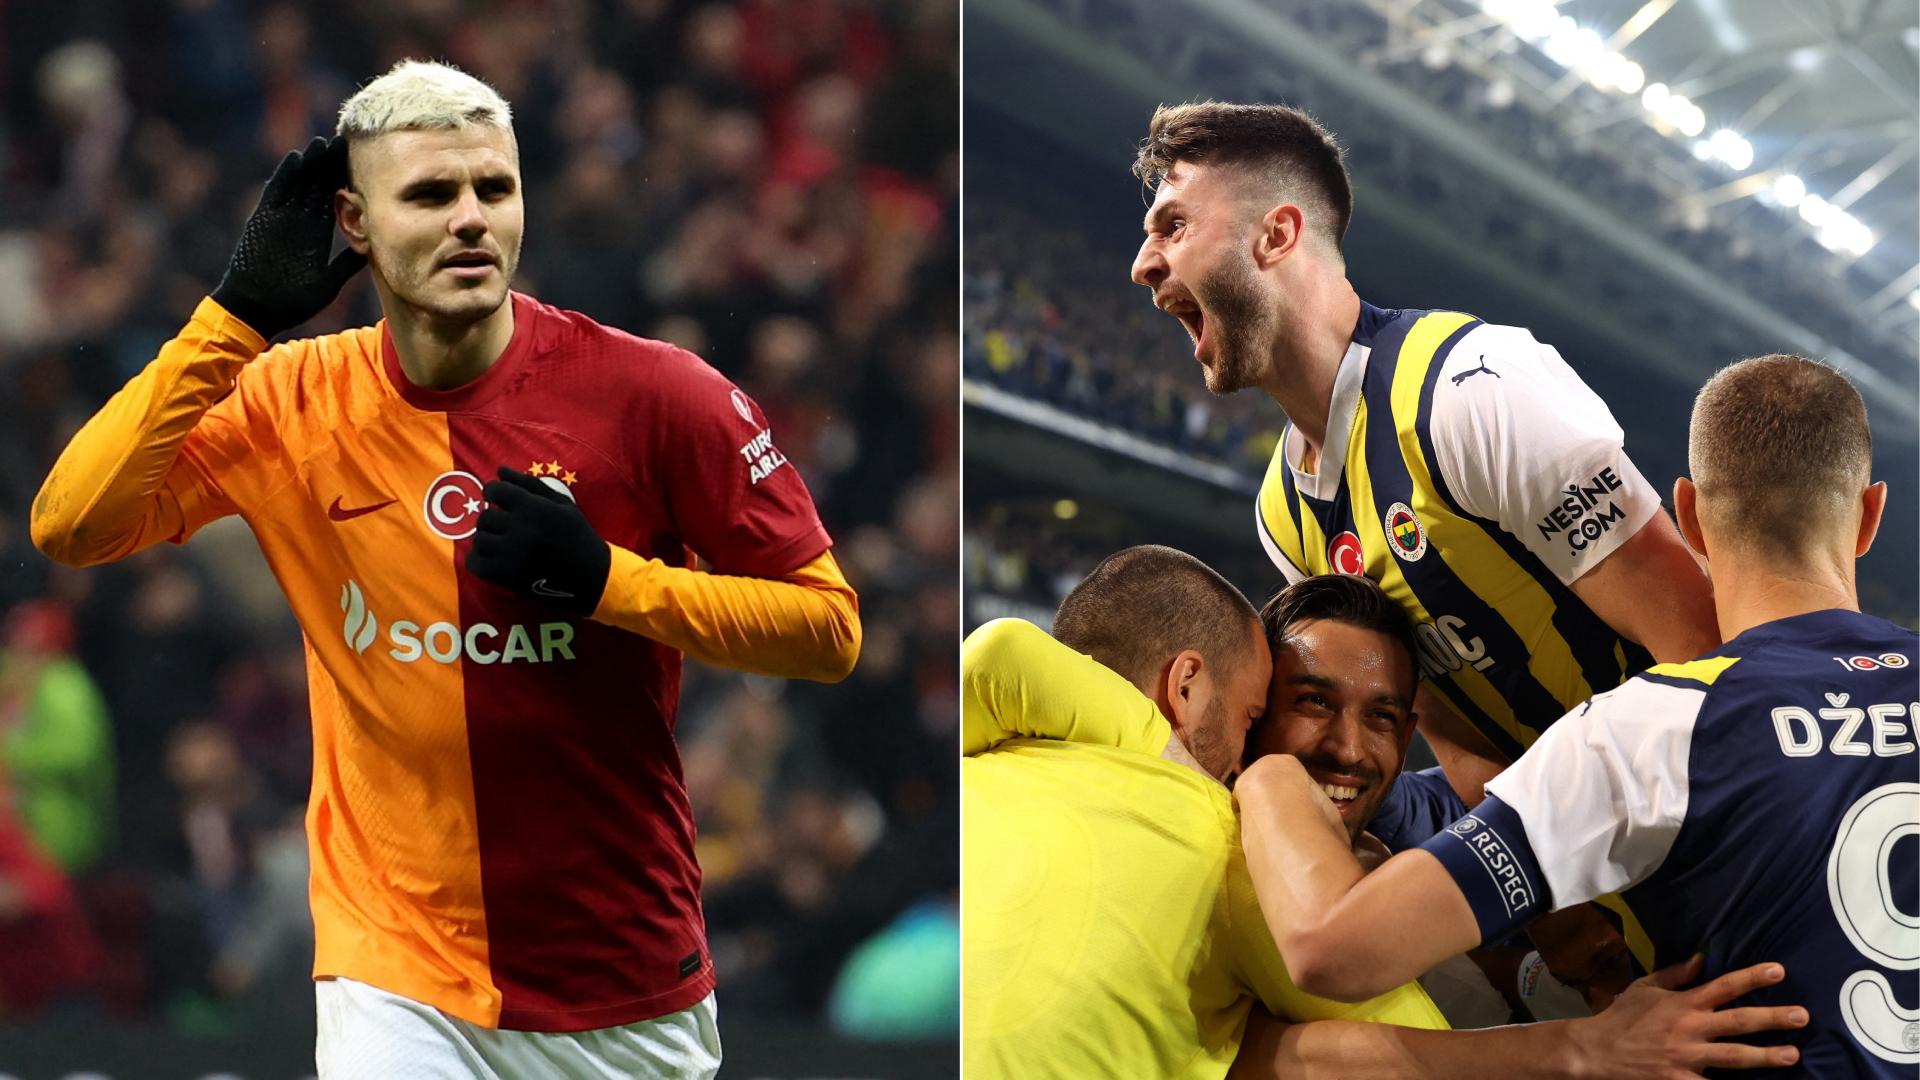 VIDEO | SüperLig Highlights: Sivasspor vs Fenerbahce